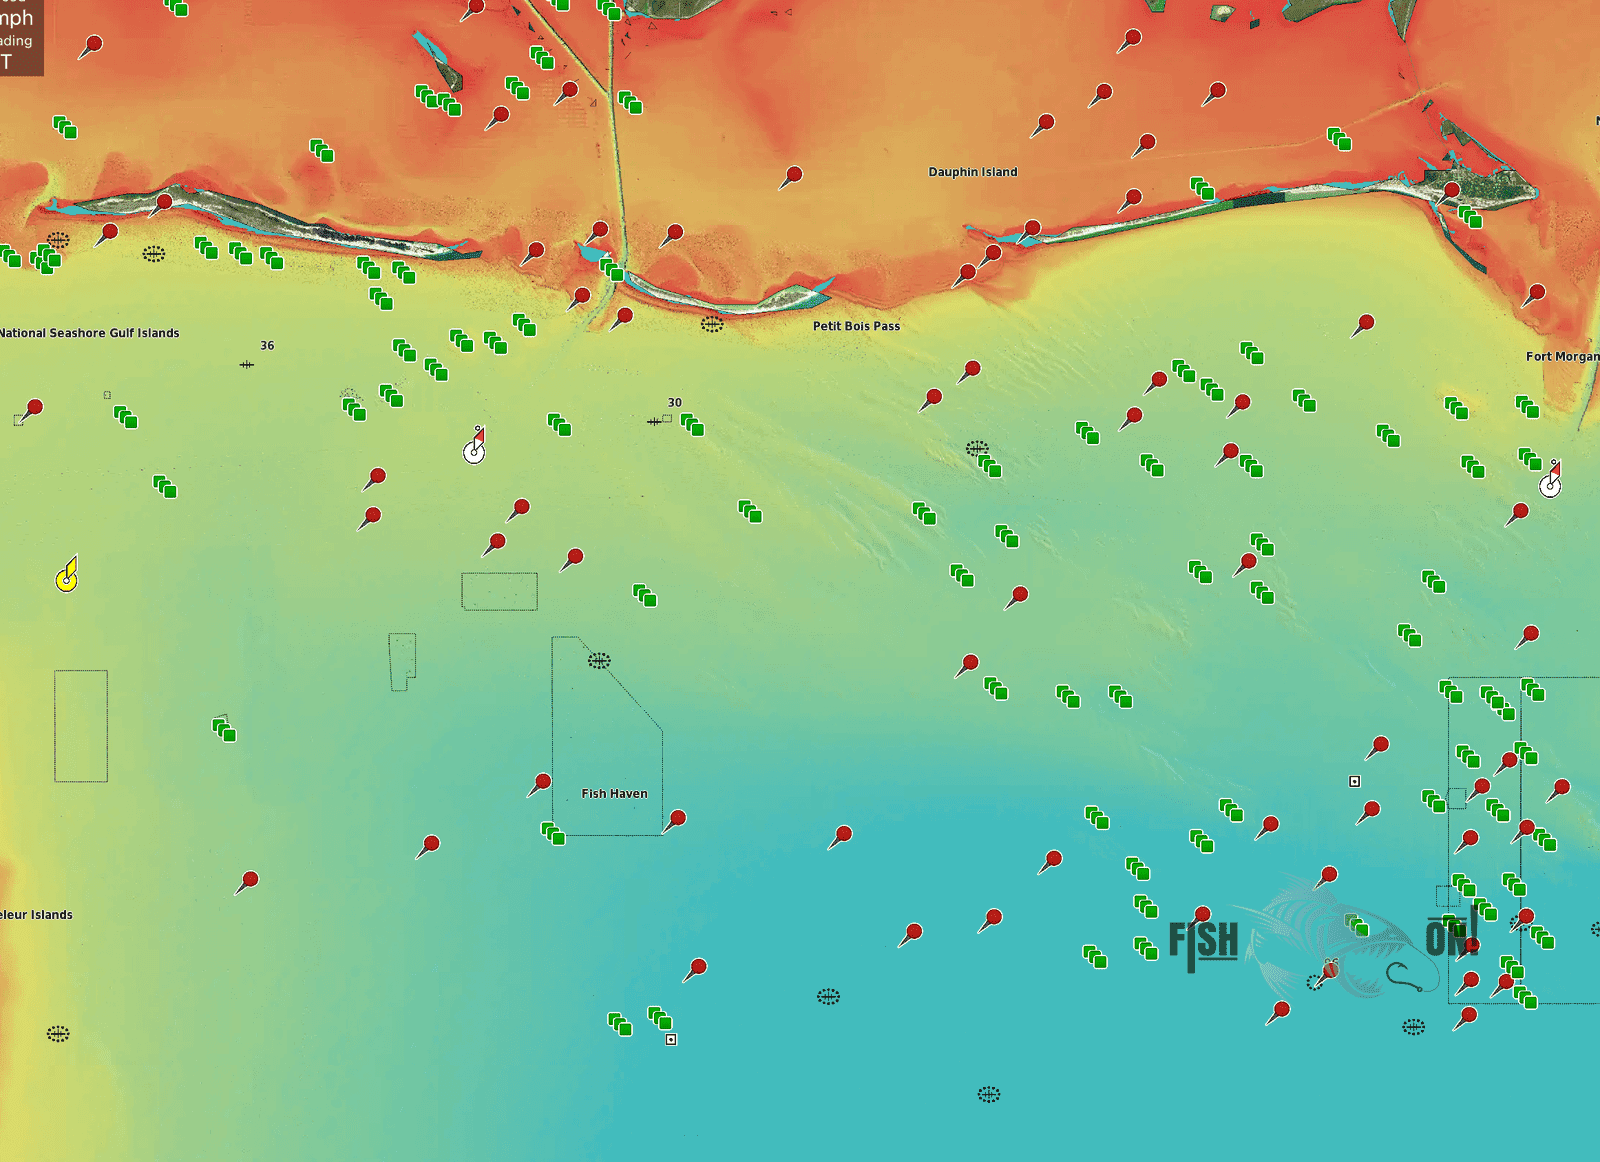 Louisiana Fishing Spots Map - Gulf Fishing Spots for GPS